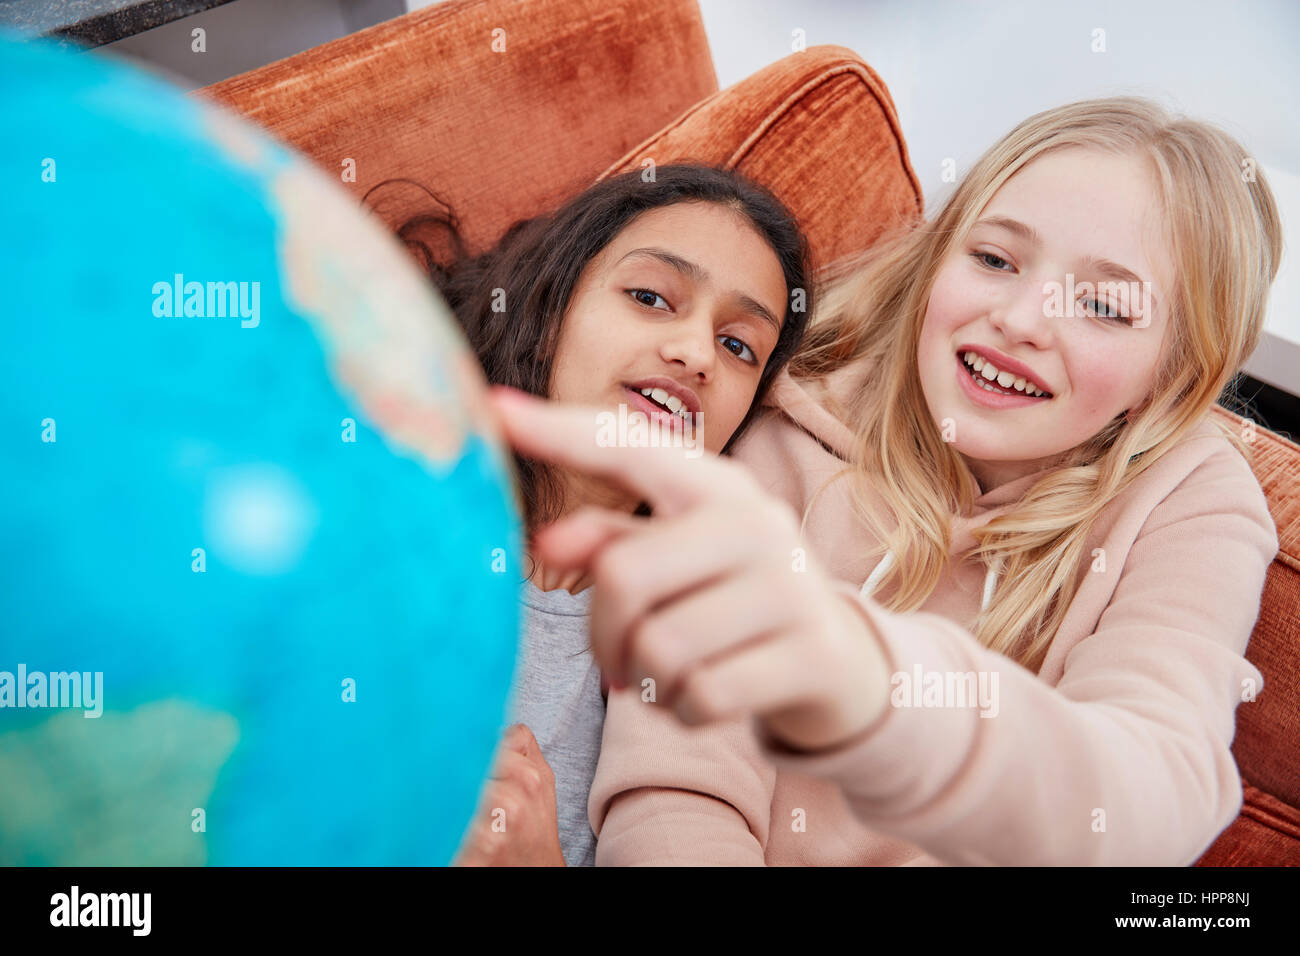 Zwei Mädchen auf Couch zeigt im globe Stockfoto